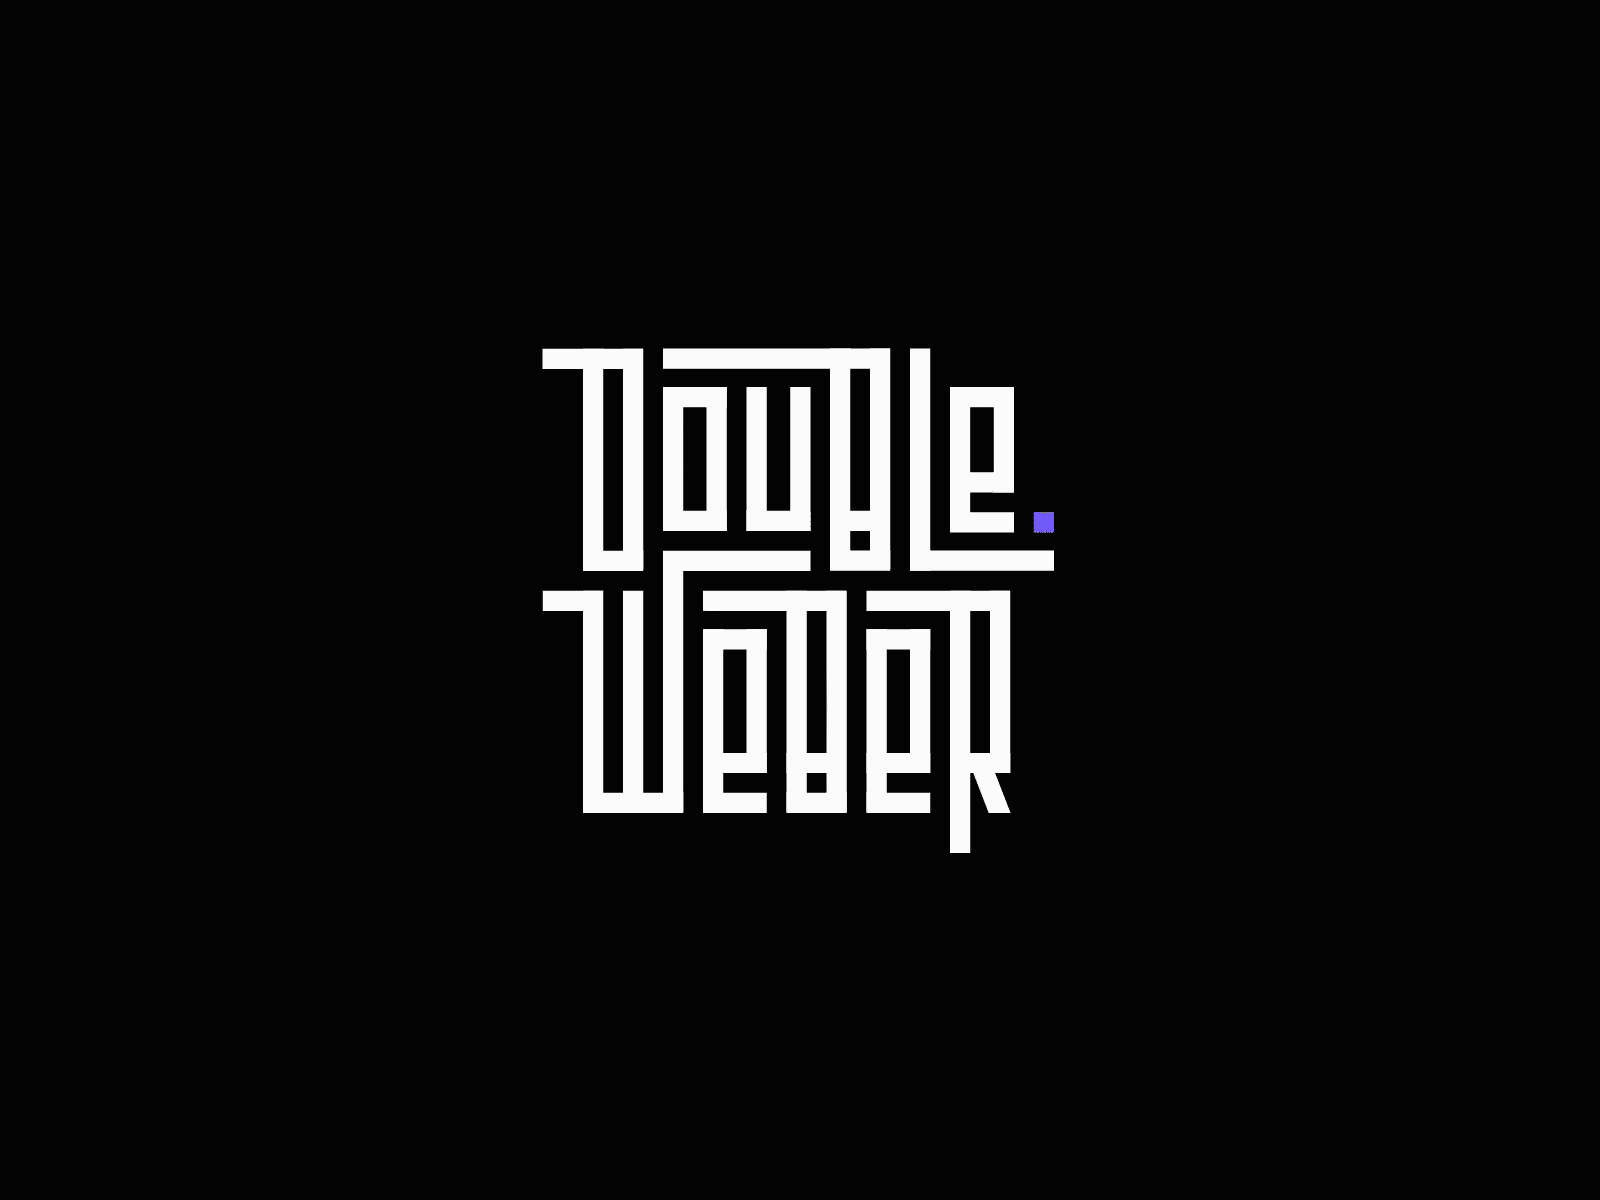 DoubleWeber • Logotype Animation